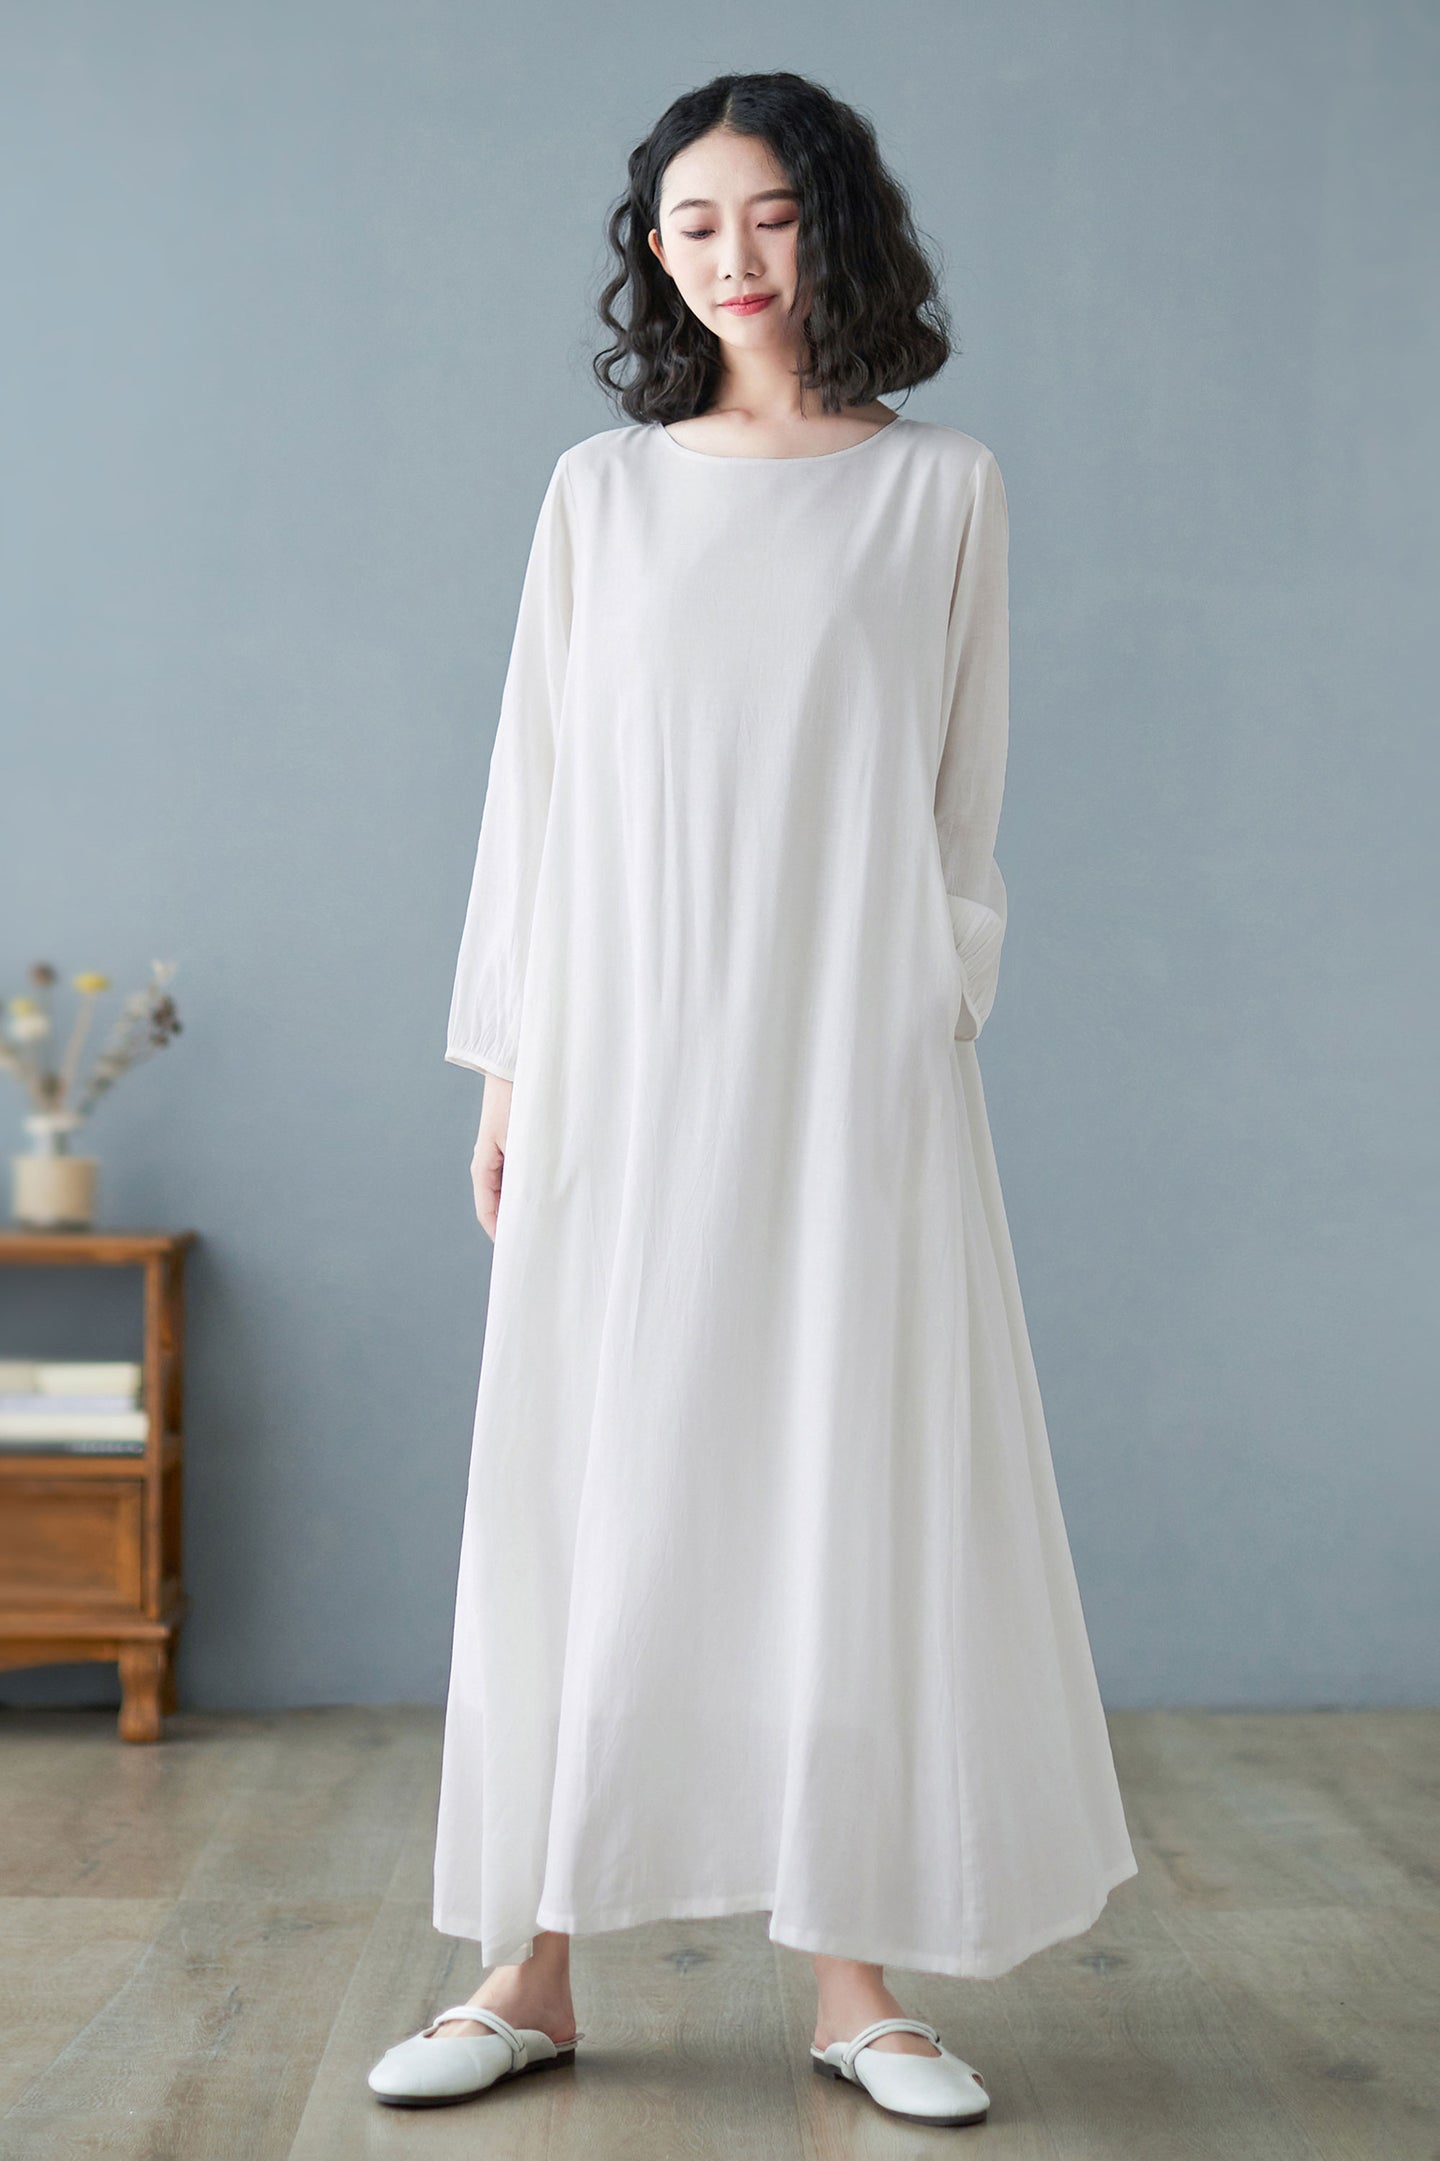 Oversized Long Linen Maxi Dress in White C2732